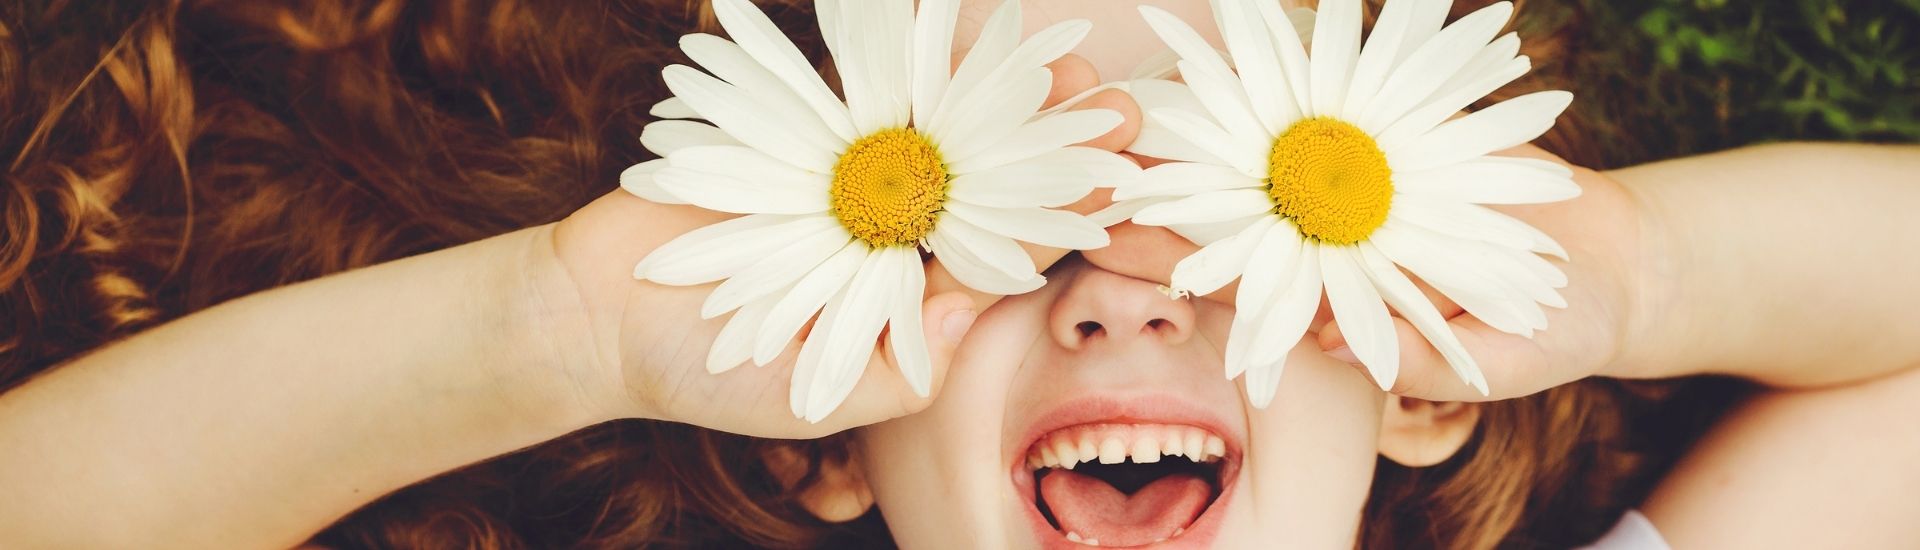 Enfant avec des fleurs sur le visage